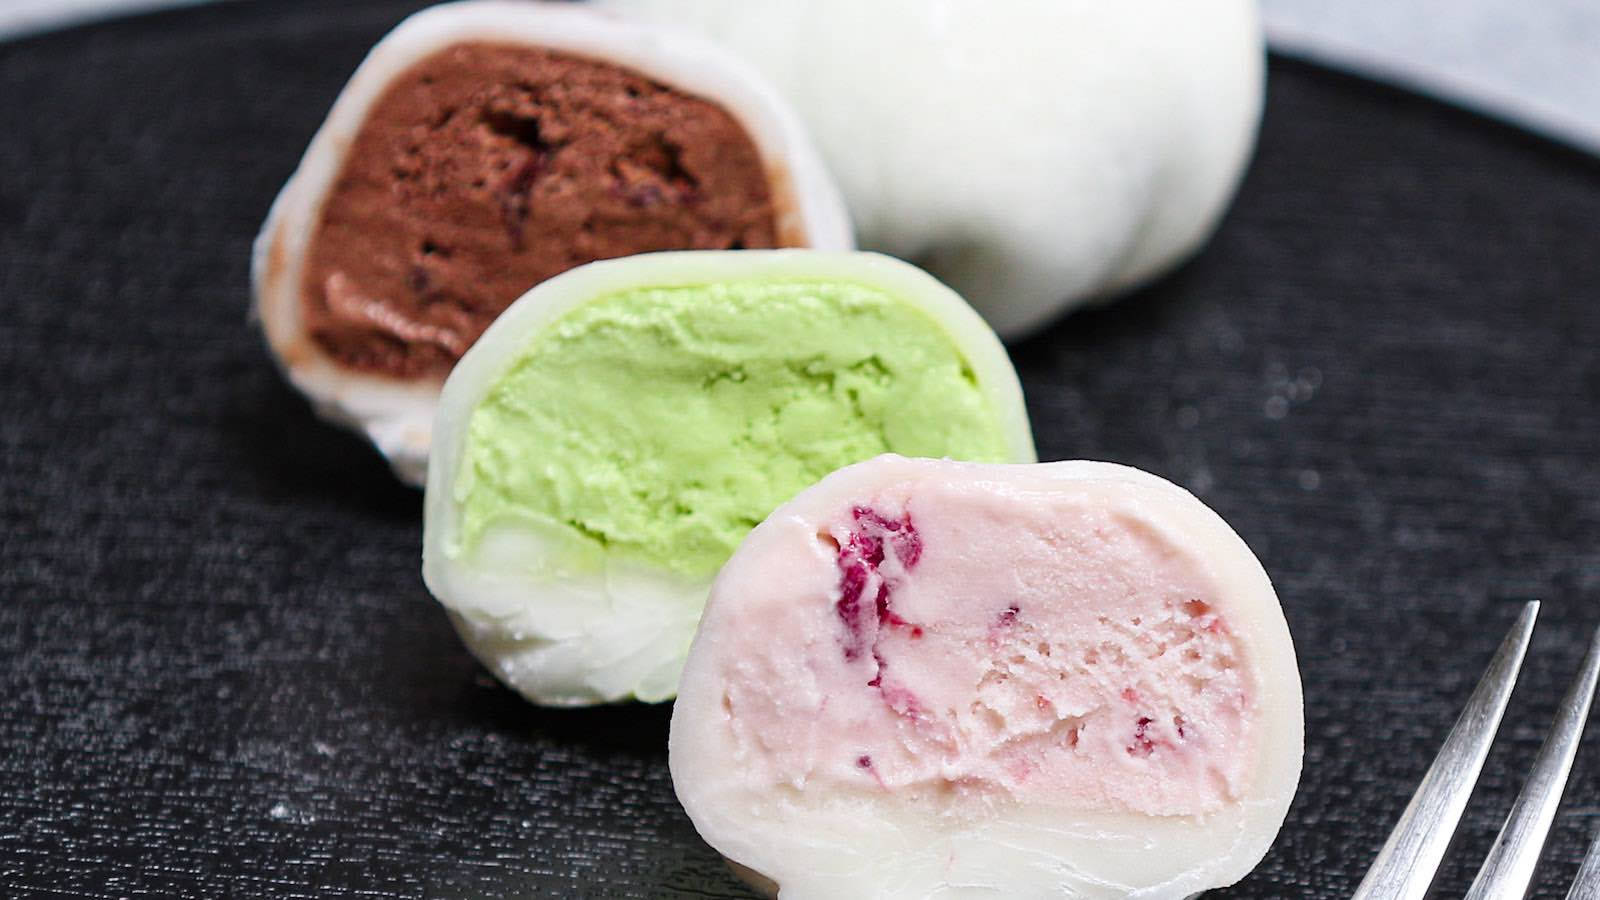 Mochi Ice Cream Flavors Wallpaper